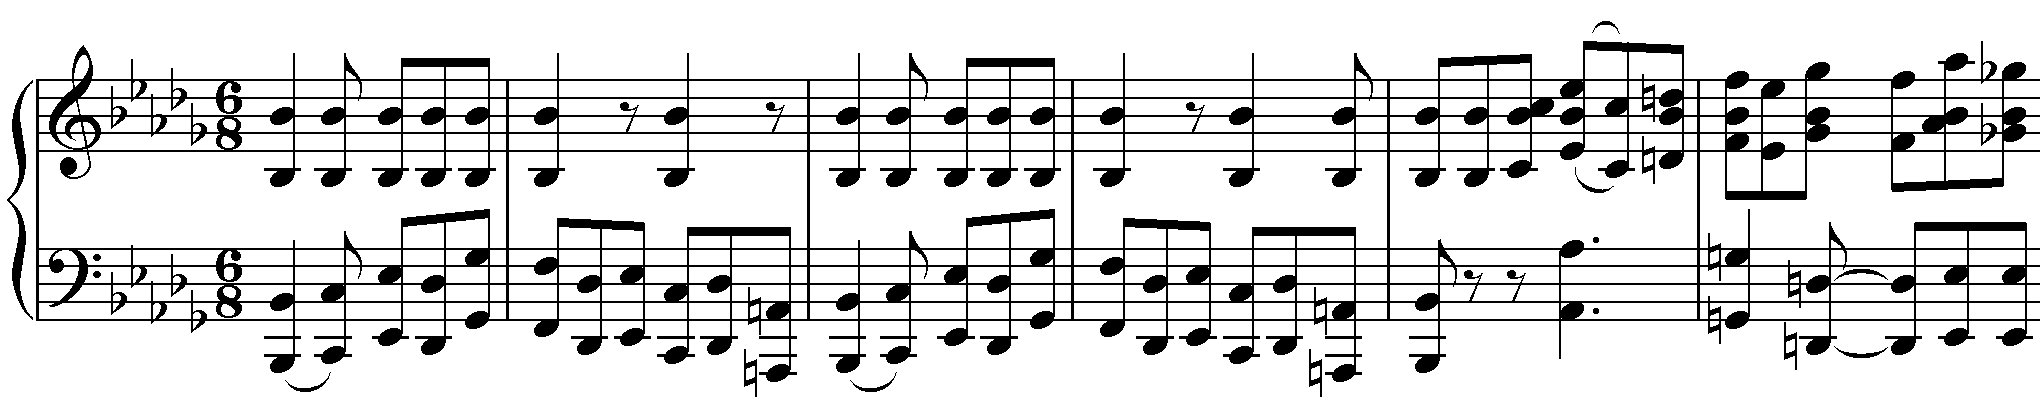 Liszt-Orchesterepolig